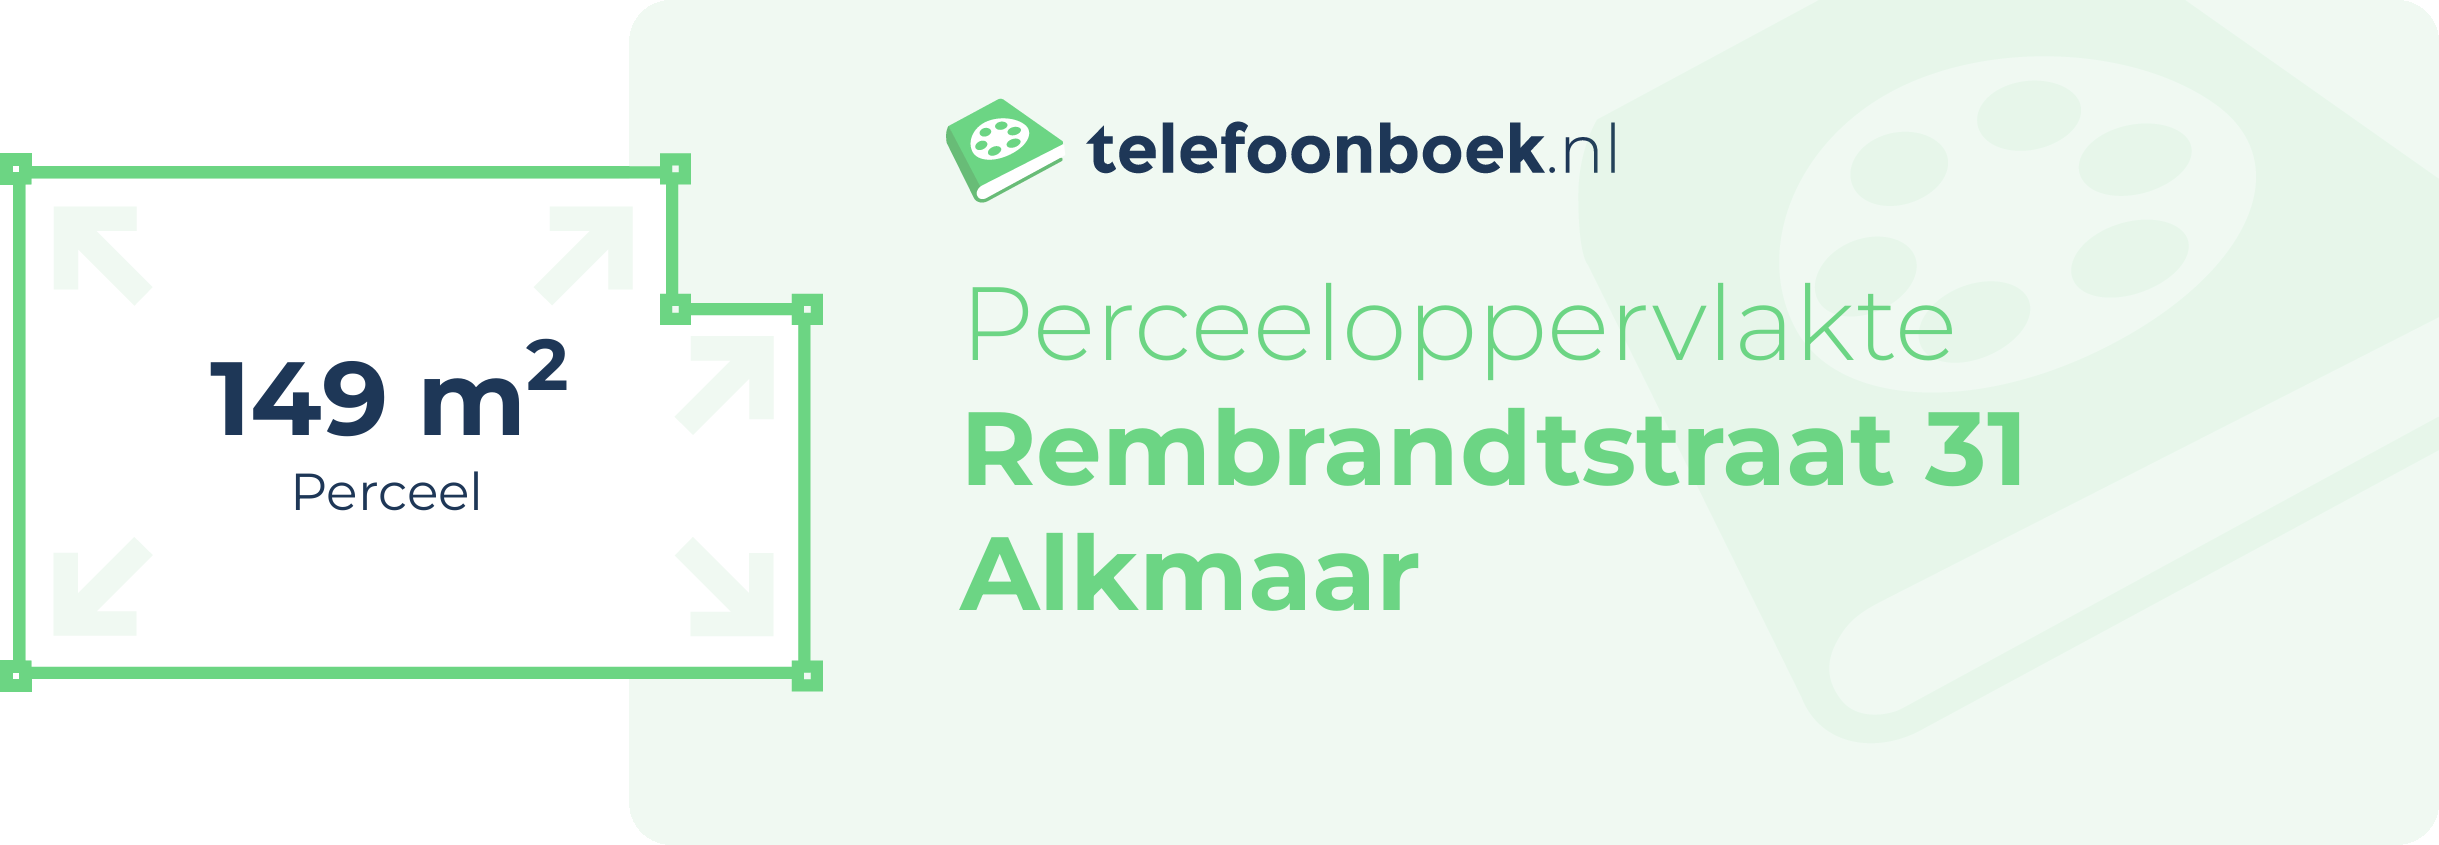 Perceeloppervlakte Rembrandtstraat 31 Alkmaar